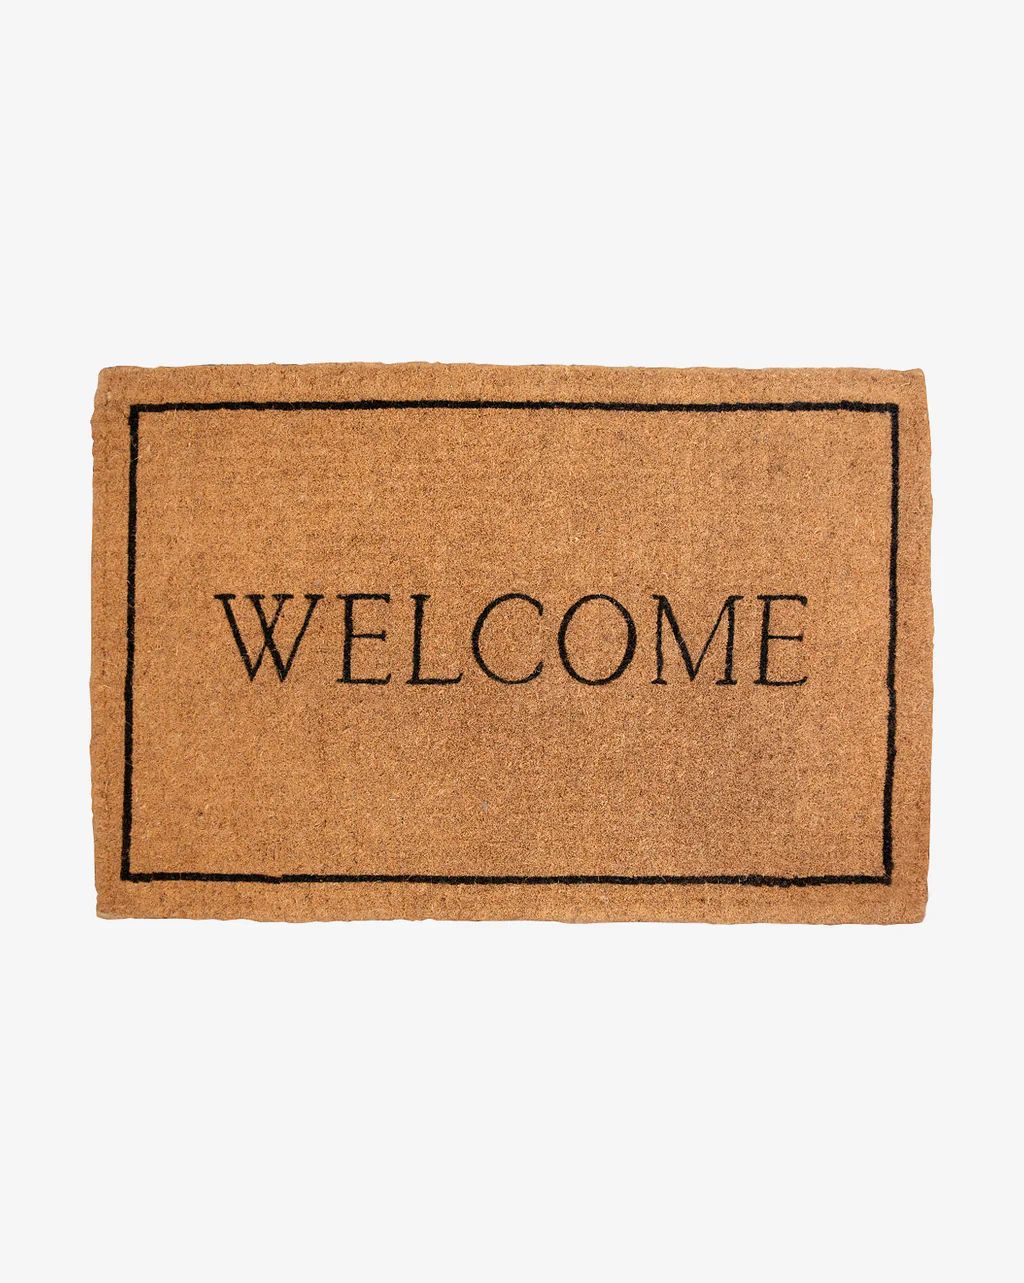 Welcome Doormat | McGee & Co.